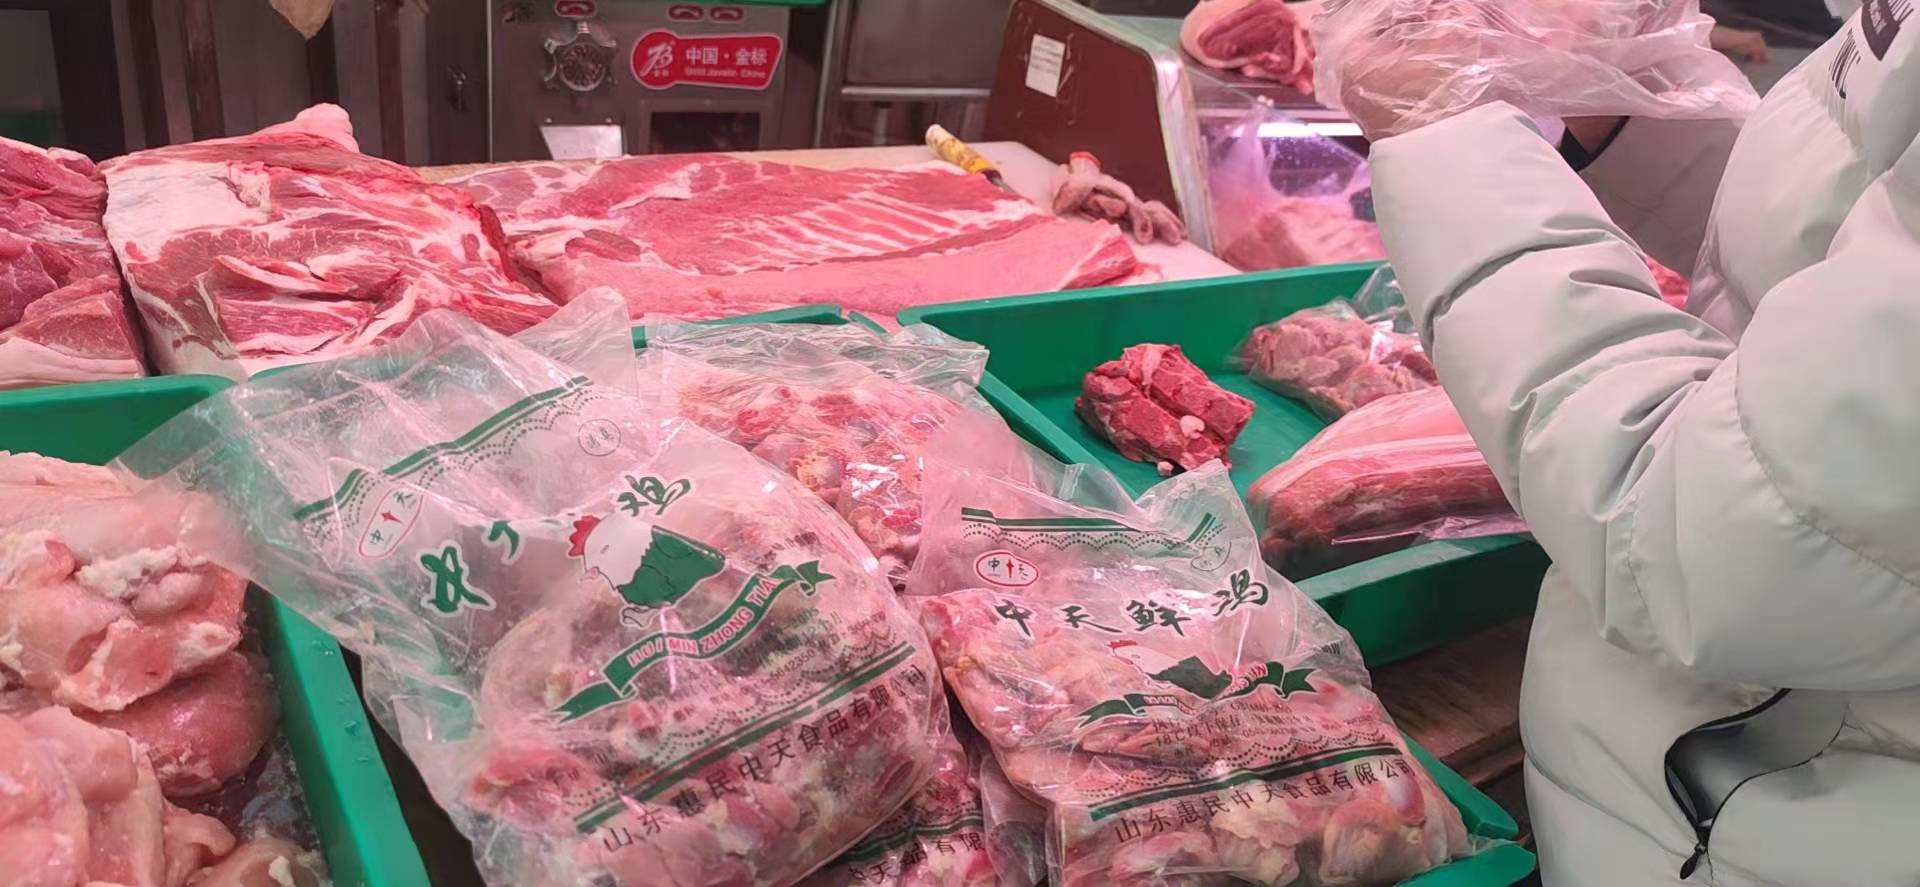 國慶節臨近屠宰企業仍有節前備貨需求 生豬價格震蕩偏強運行